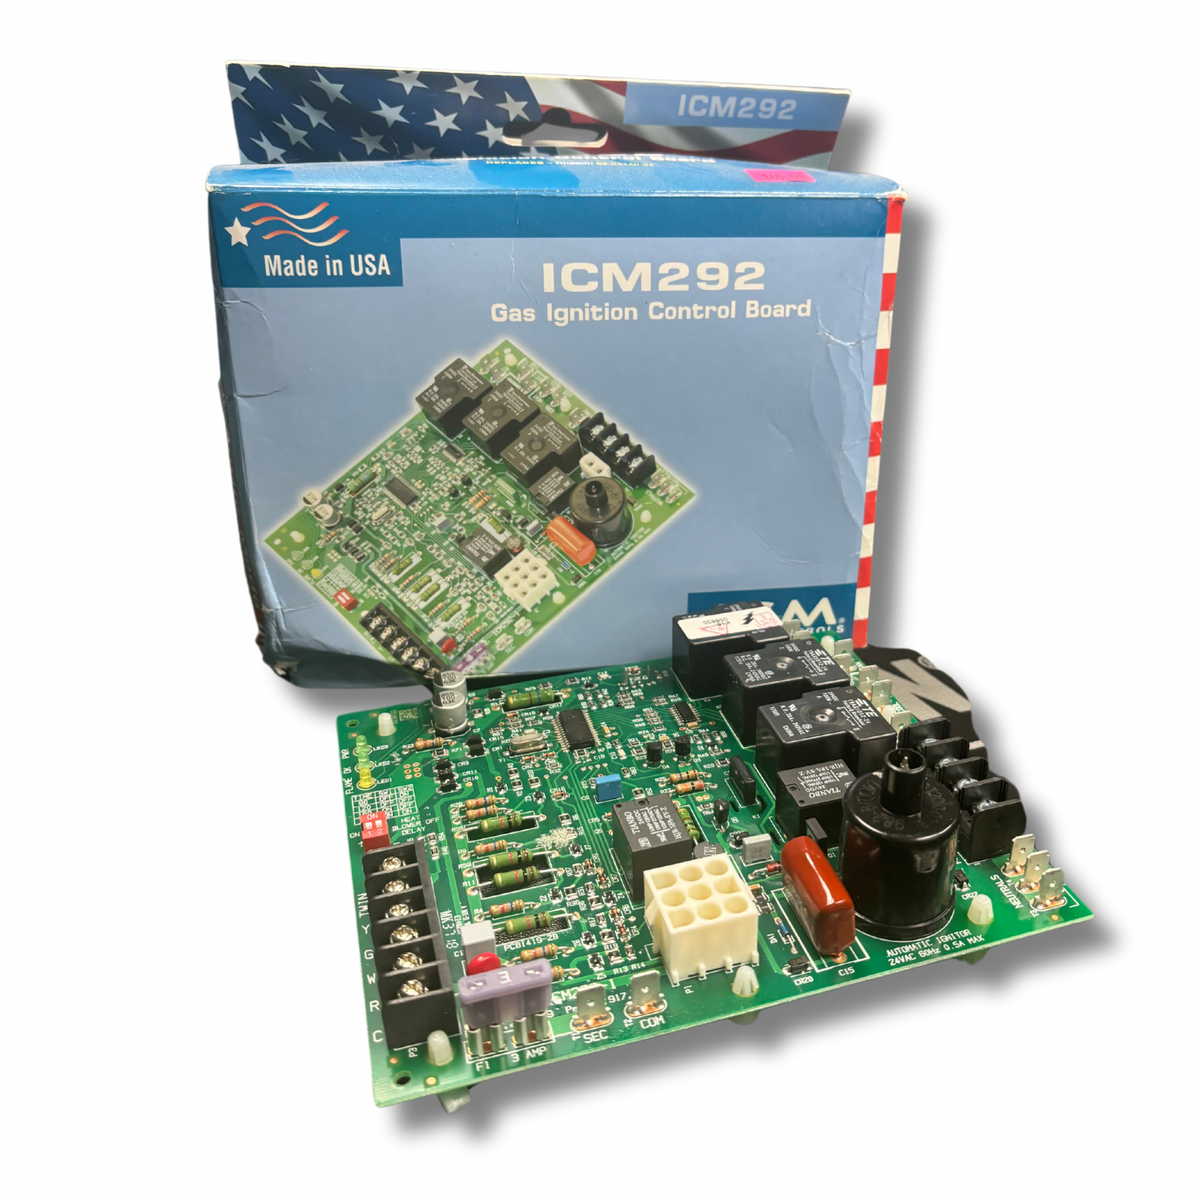 ICM292 Gas Ignition Control Board